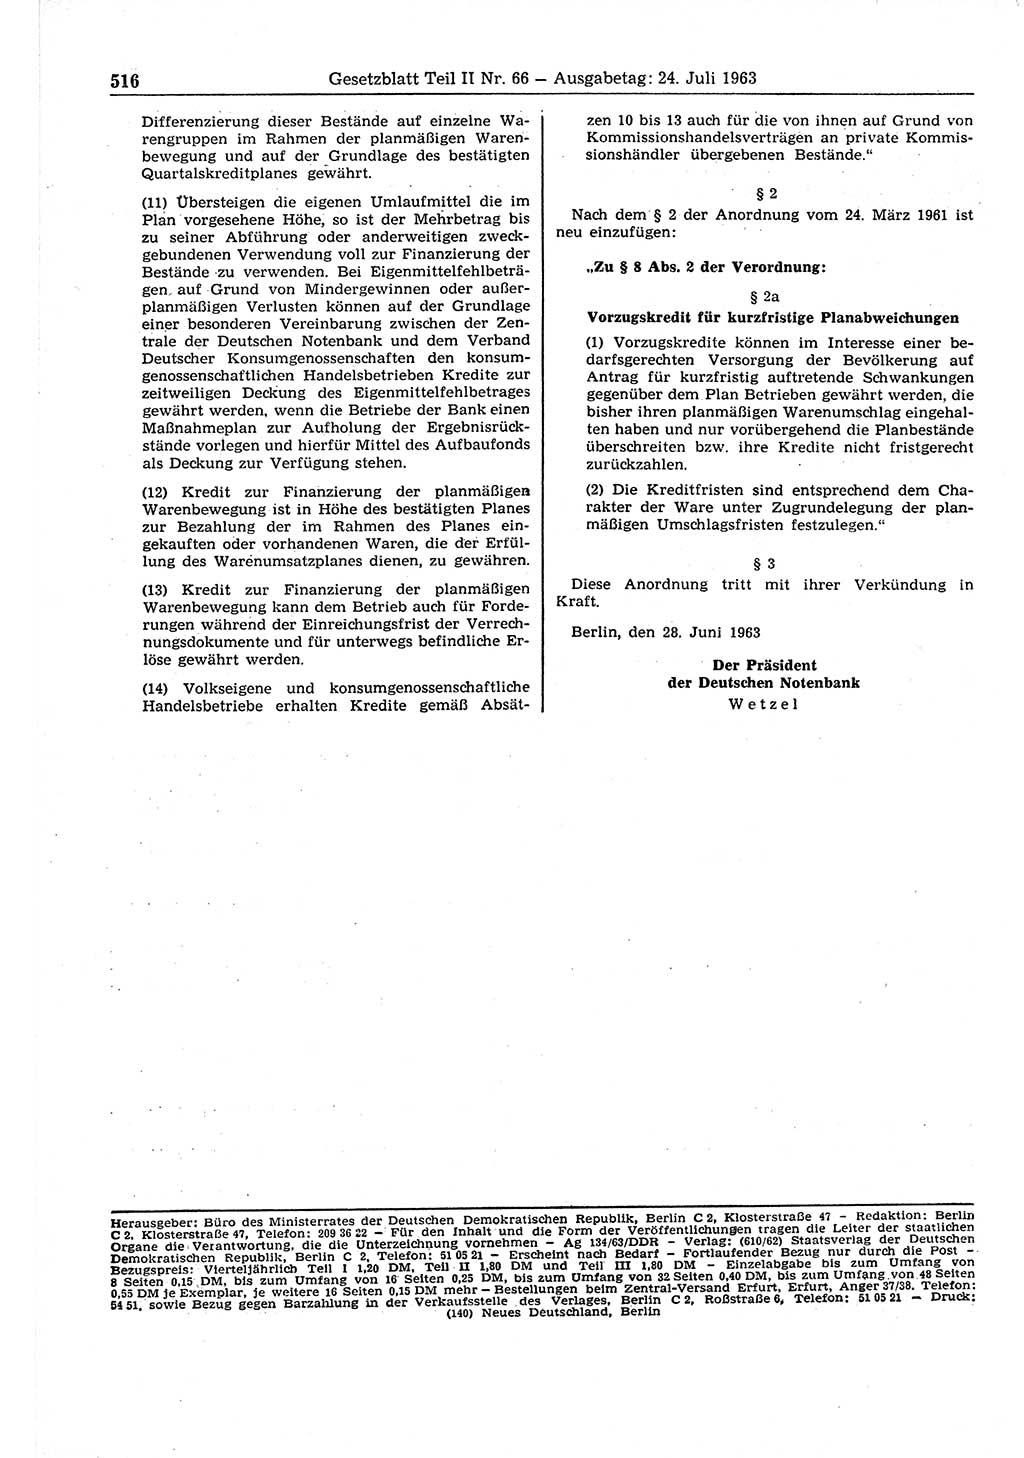 Gesetzblatt (GBl.) der Deutschen Demokratischen Republik (DDR) Teil ⅠⅠ 1963, Seite 516 (GBl. DDR ⅠⅠ 1963, S. 516)